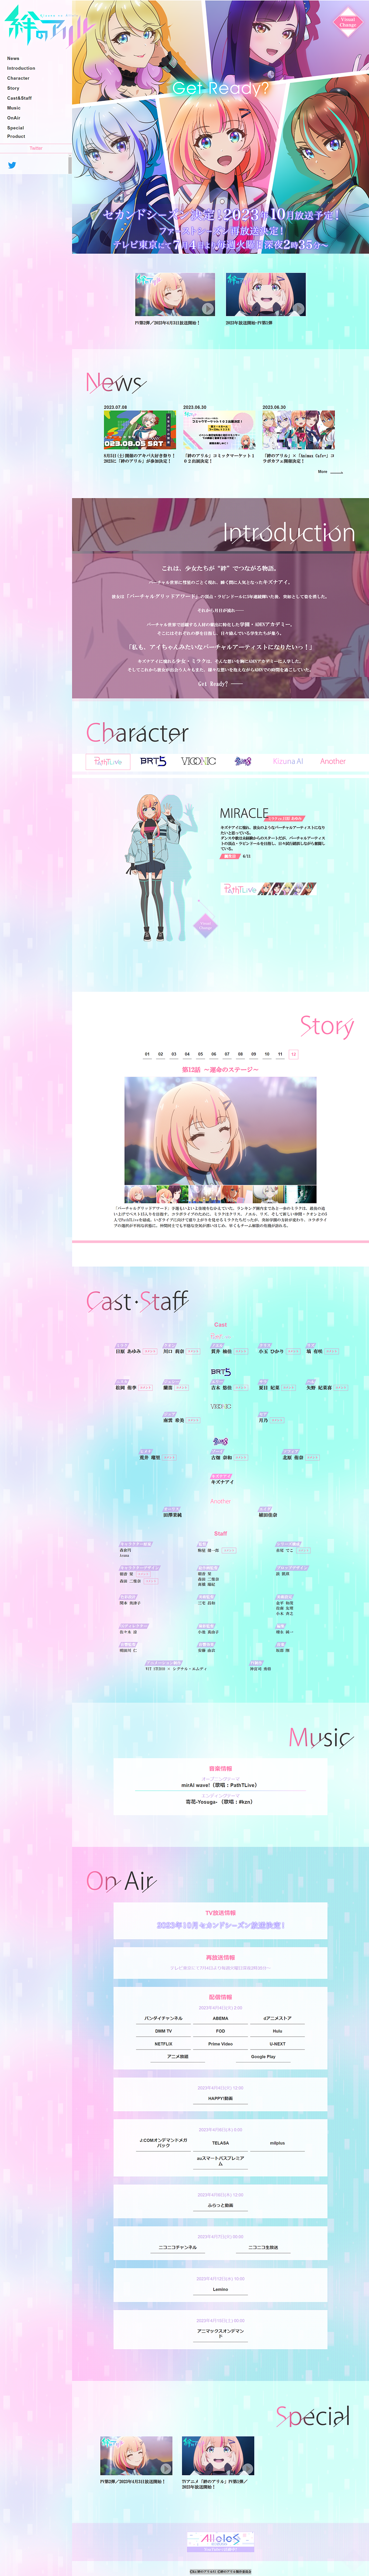 TVアニメ 絆のアリル 公式サイト